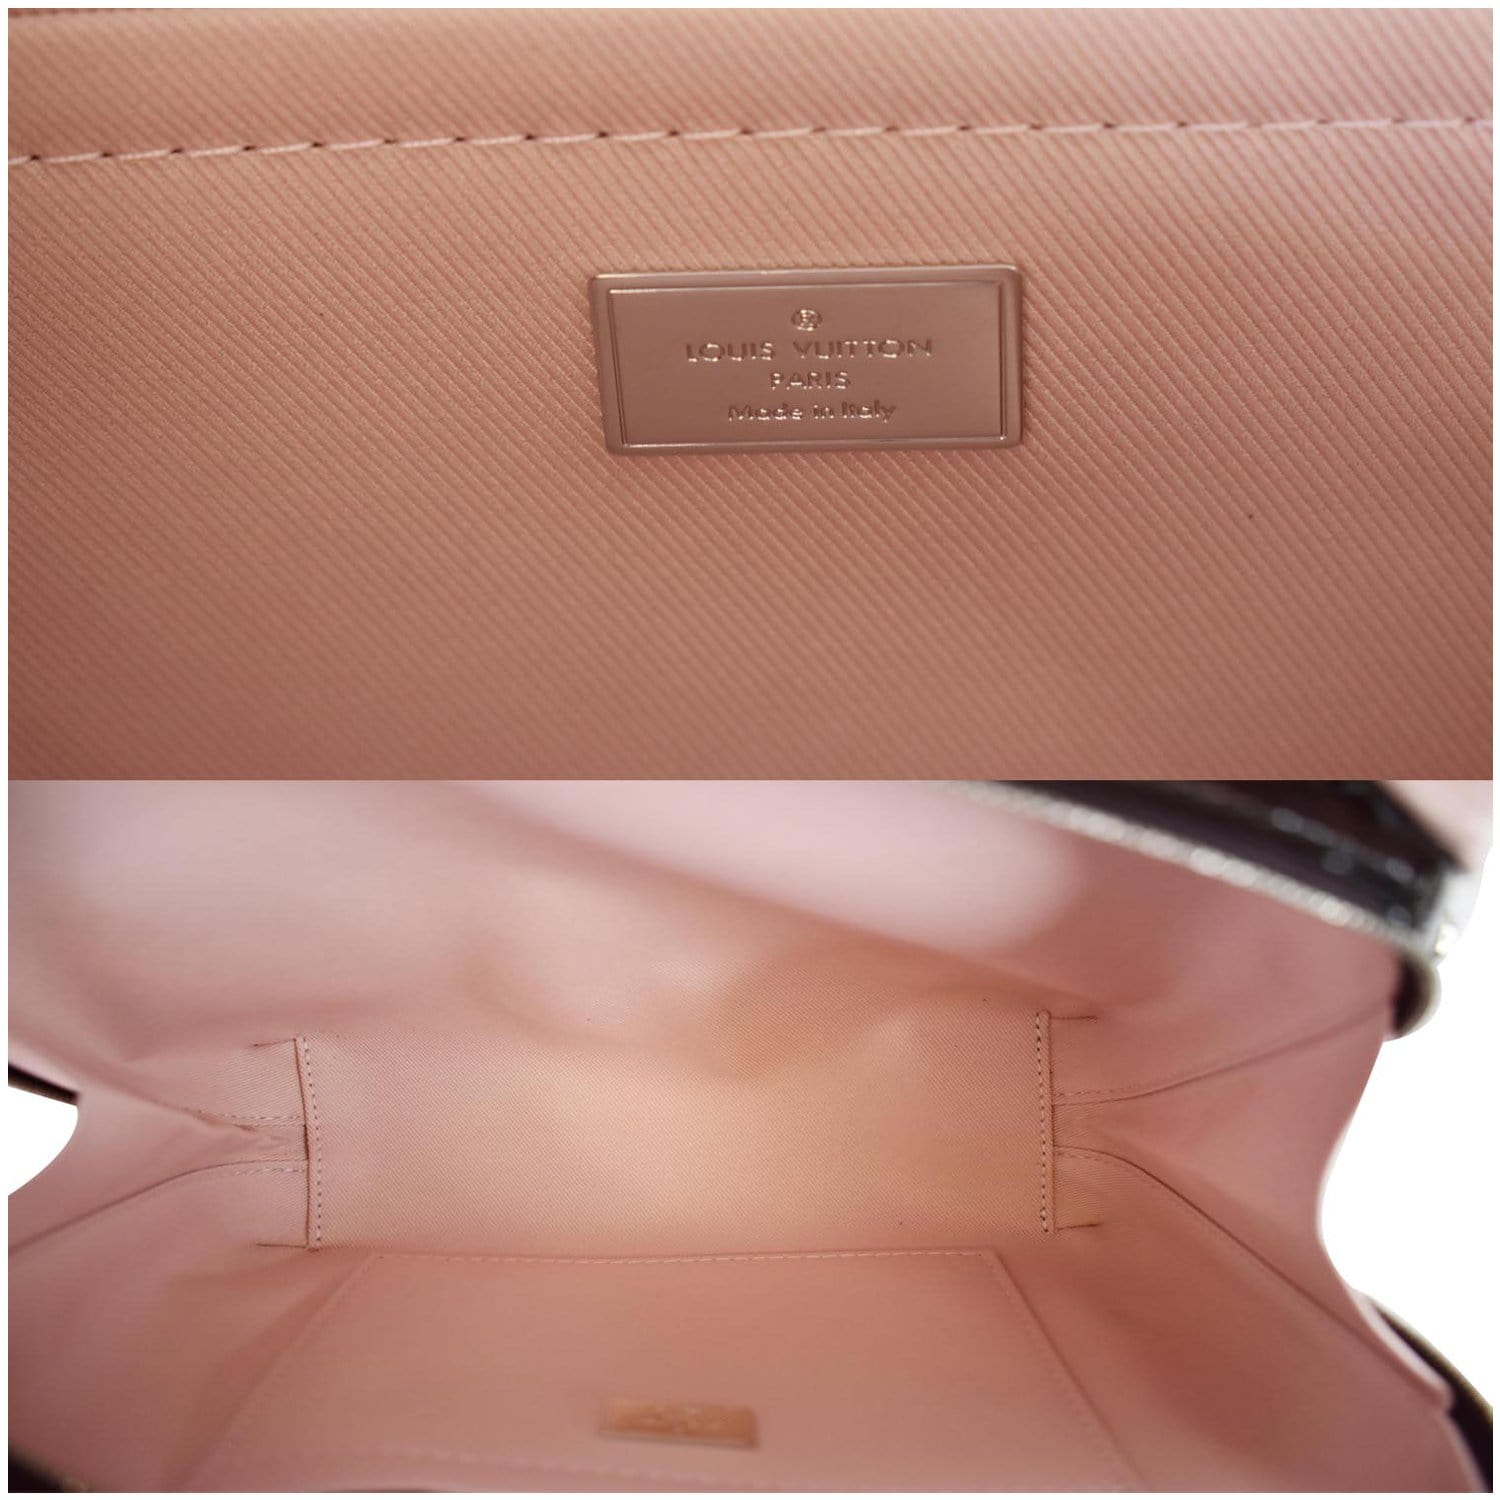 Louis Vuitton Monogram Vernis Amaranth Leather Félicie Pochette Clutch Bag